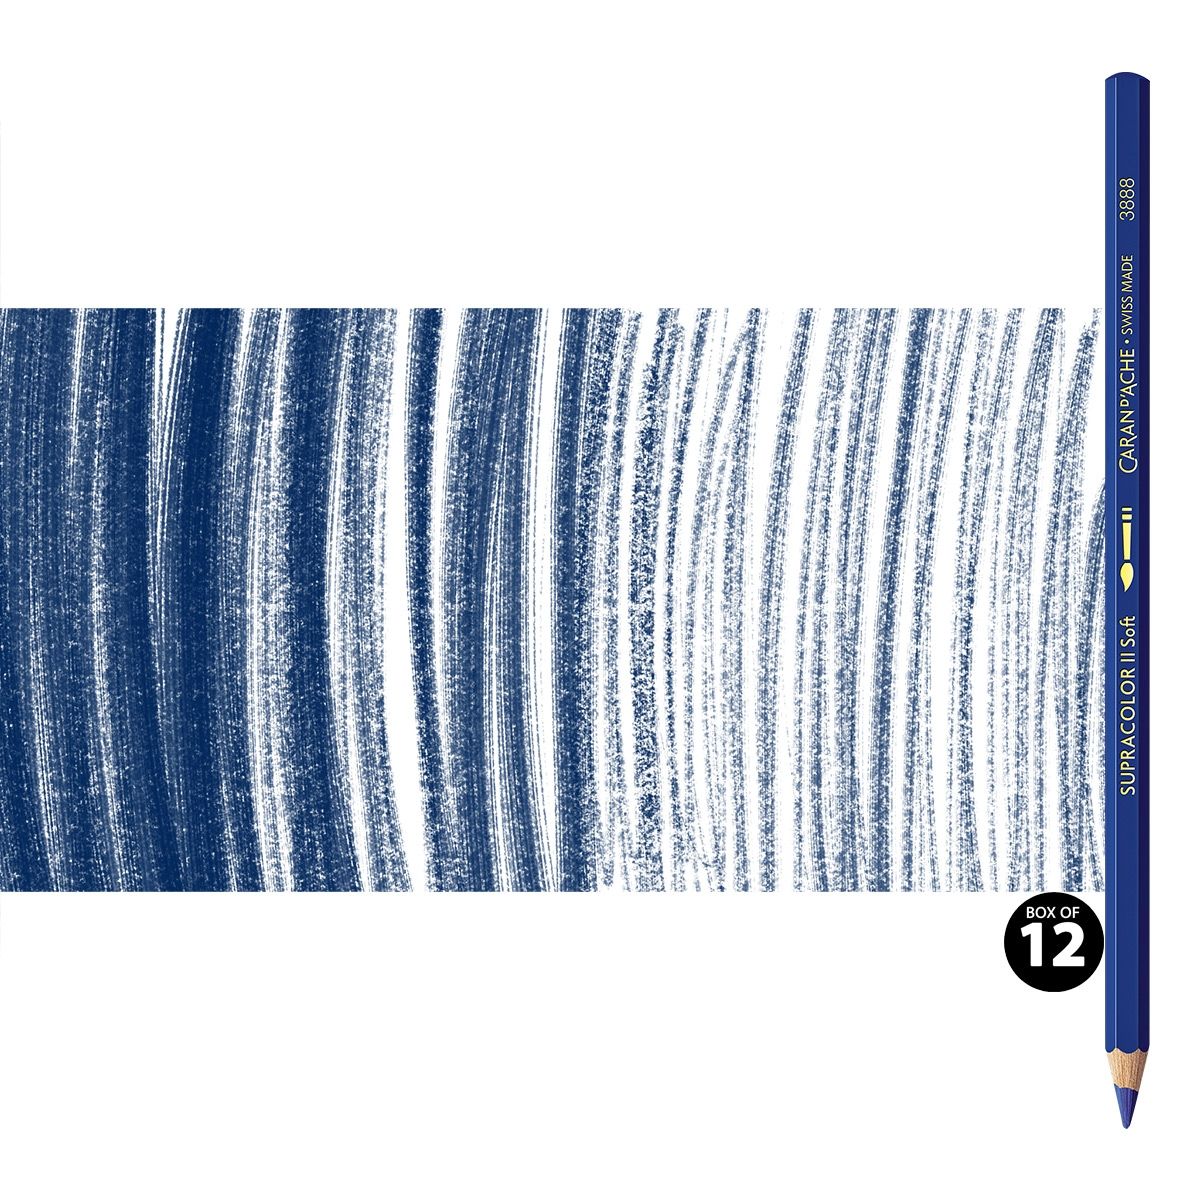 Supracolor II Watercolor Pencils Box of 12 No. 149 - Night Blue